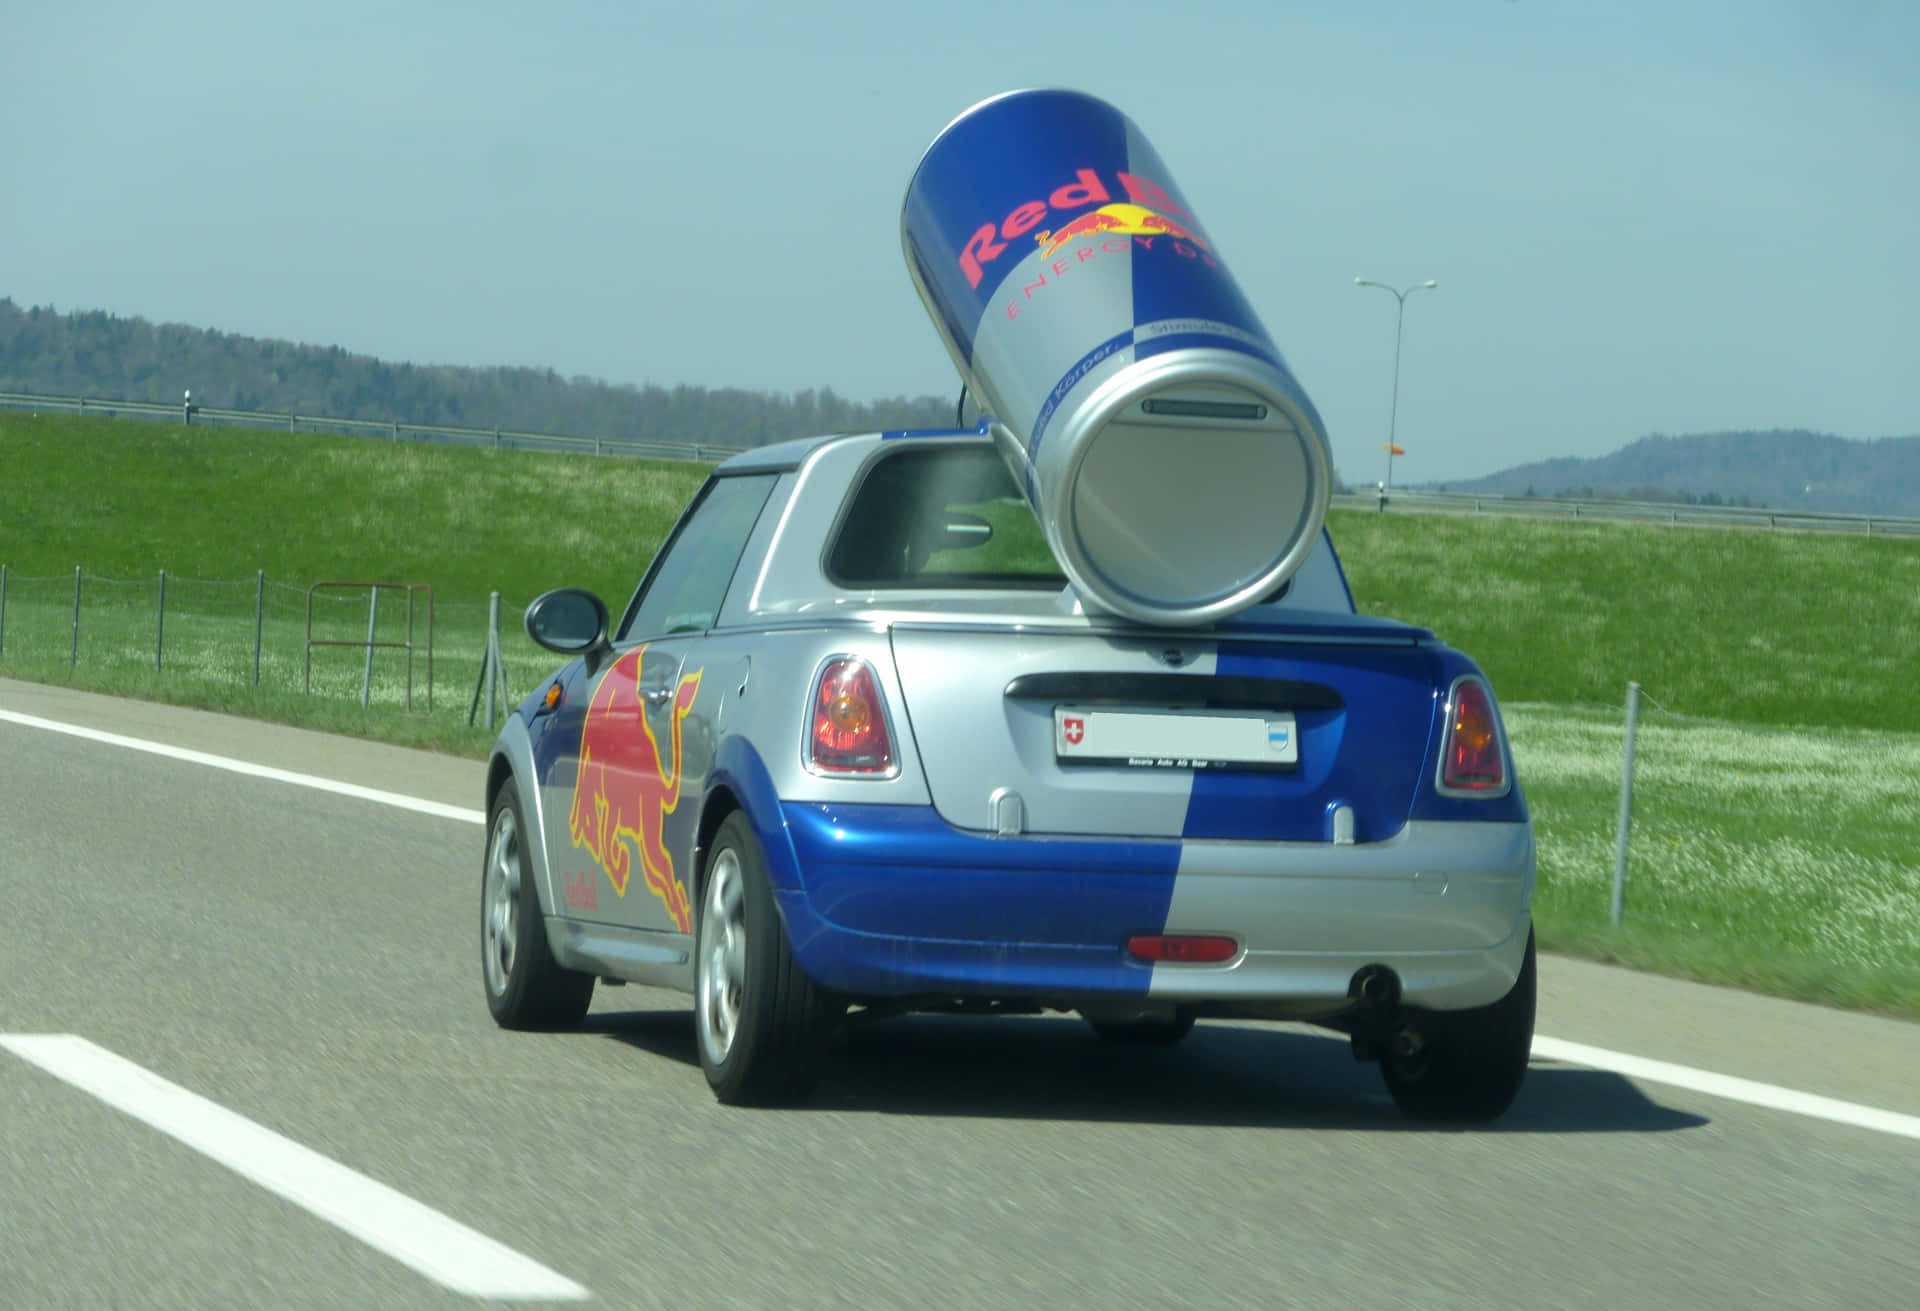 "Feel the Red Bull energy, wherever you go!"